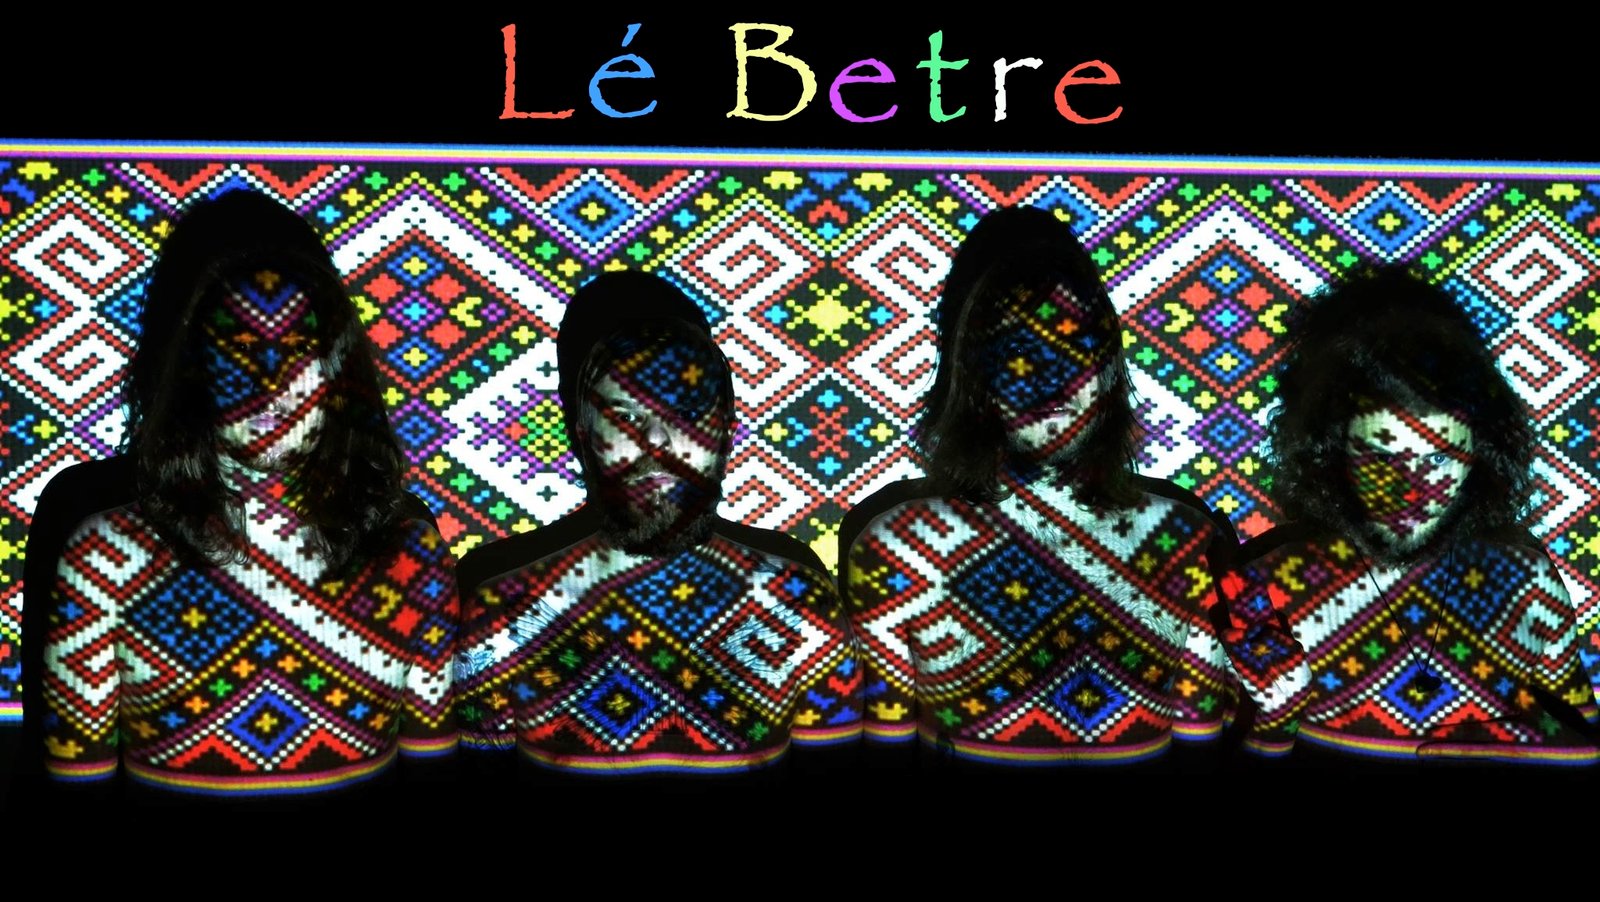 Lé Betre